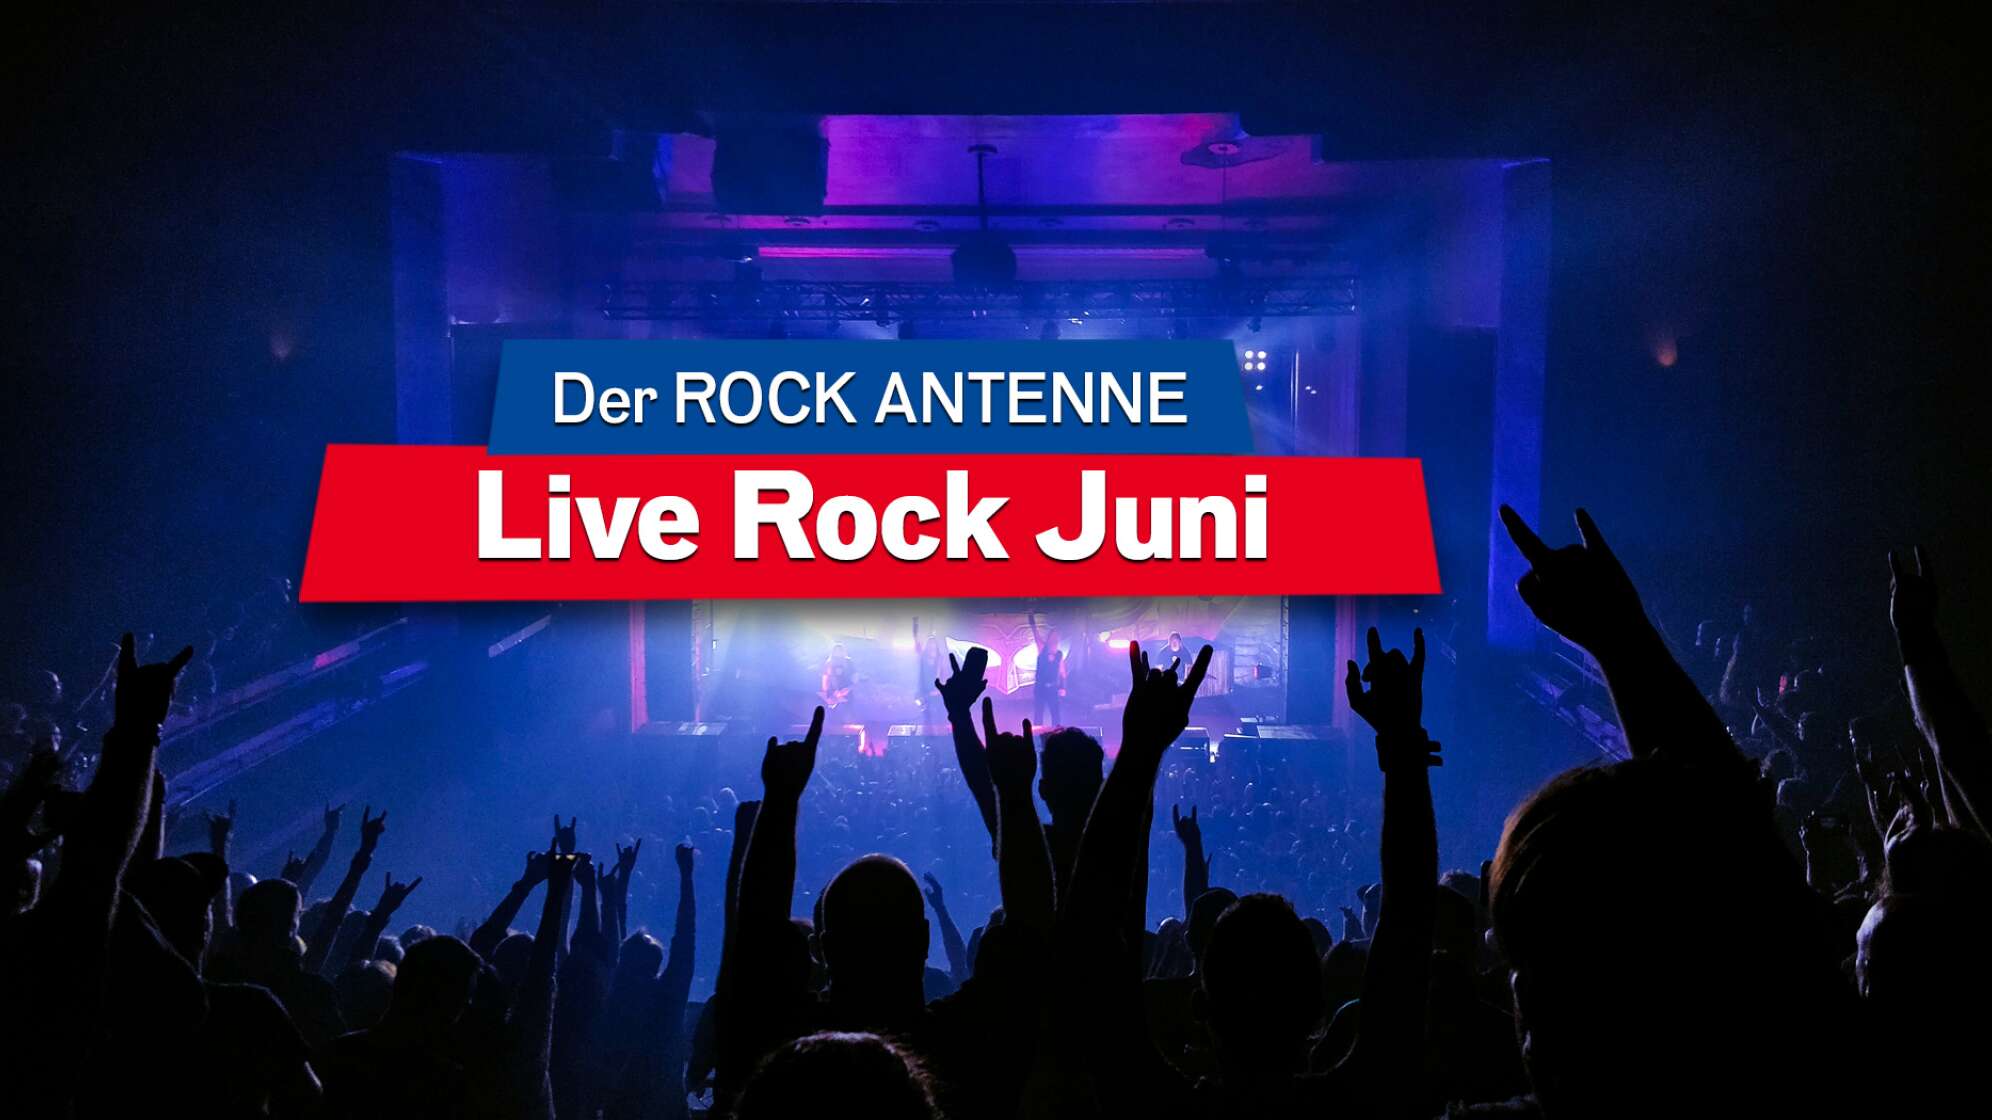 Blick auf die Bühne bei einem Konzert, Aufschrift "Der ROCK ANTENNE Live Rock Juni"